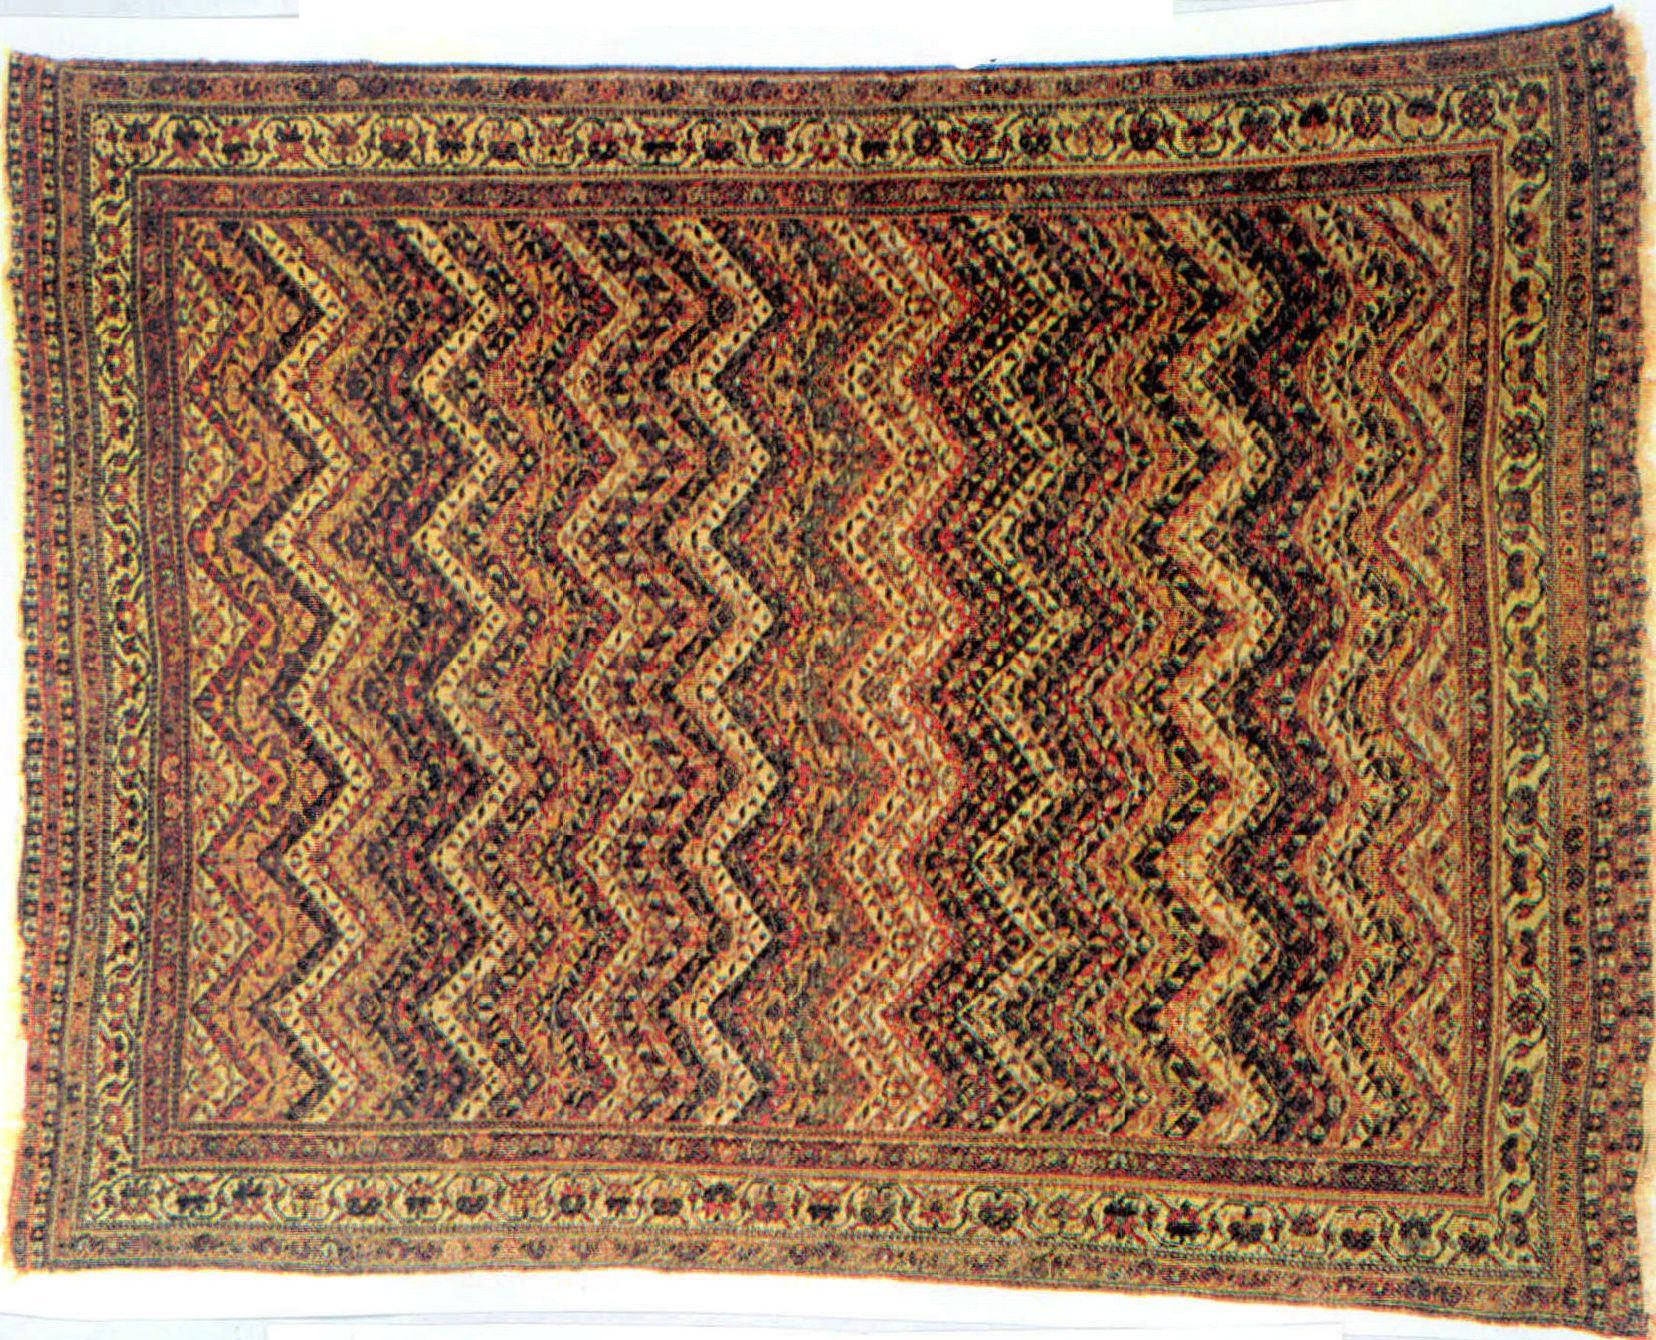 19世纪伊朗南部部落的波斯地毯样式